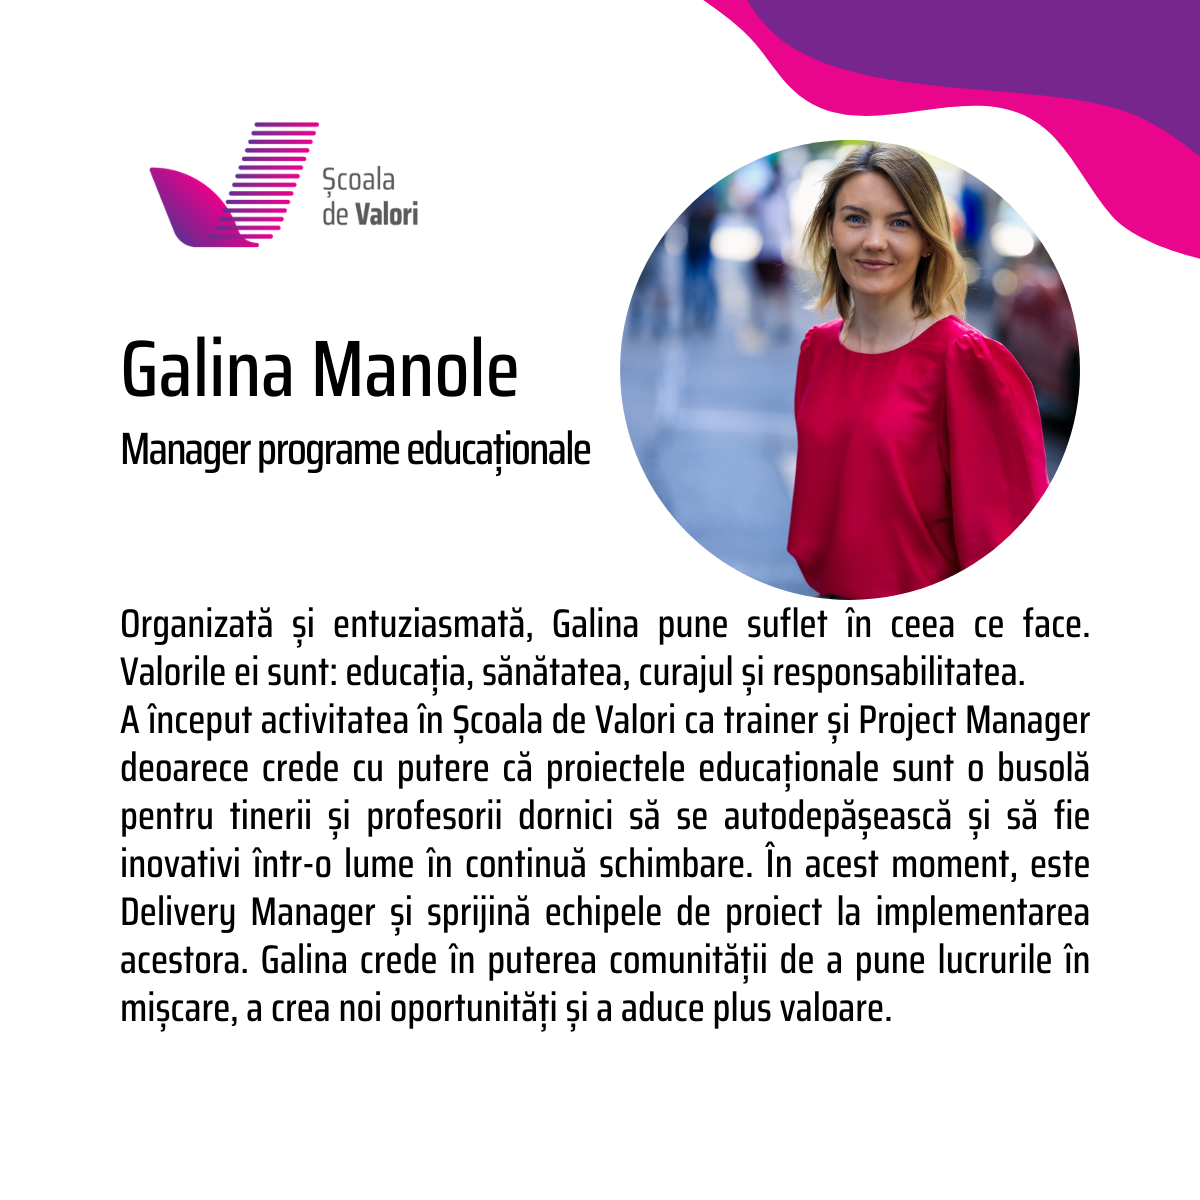 Galina Manole